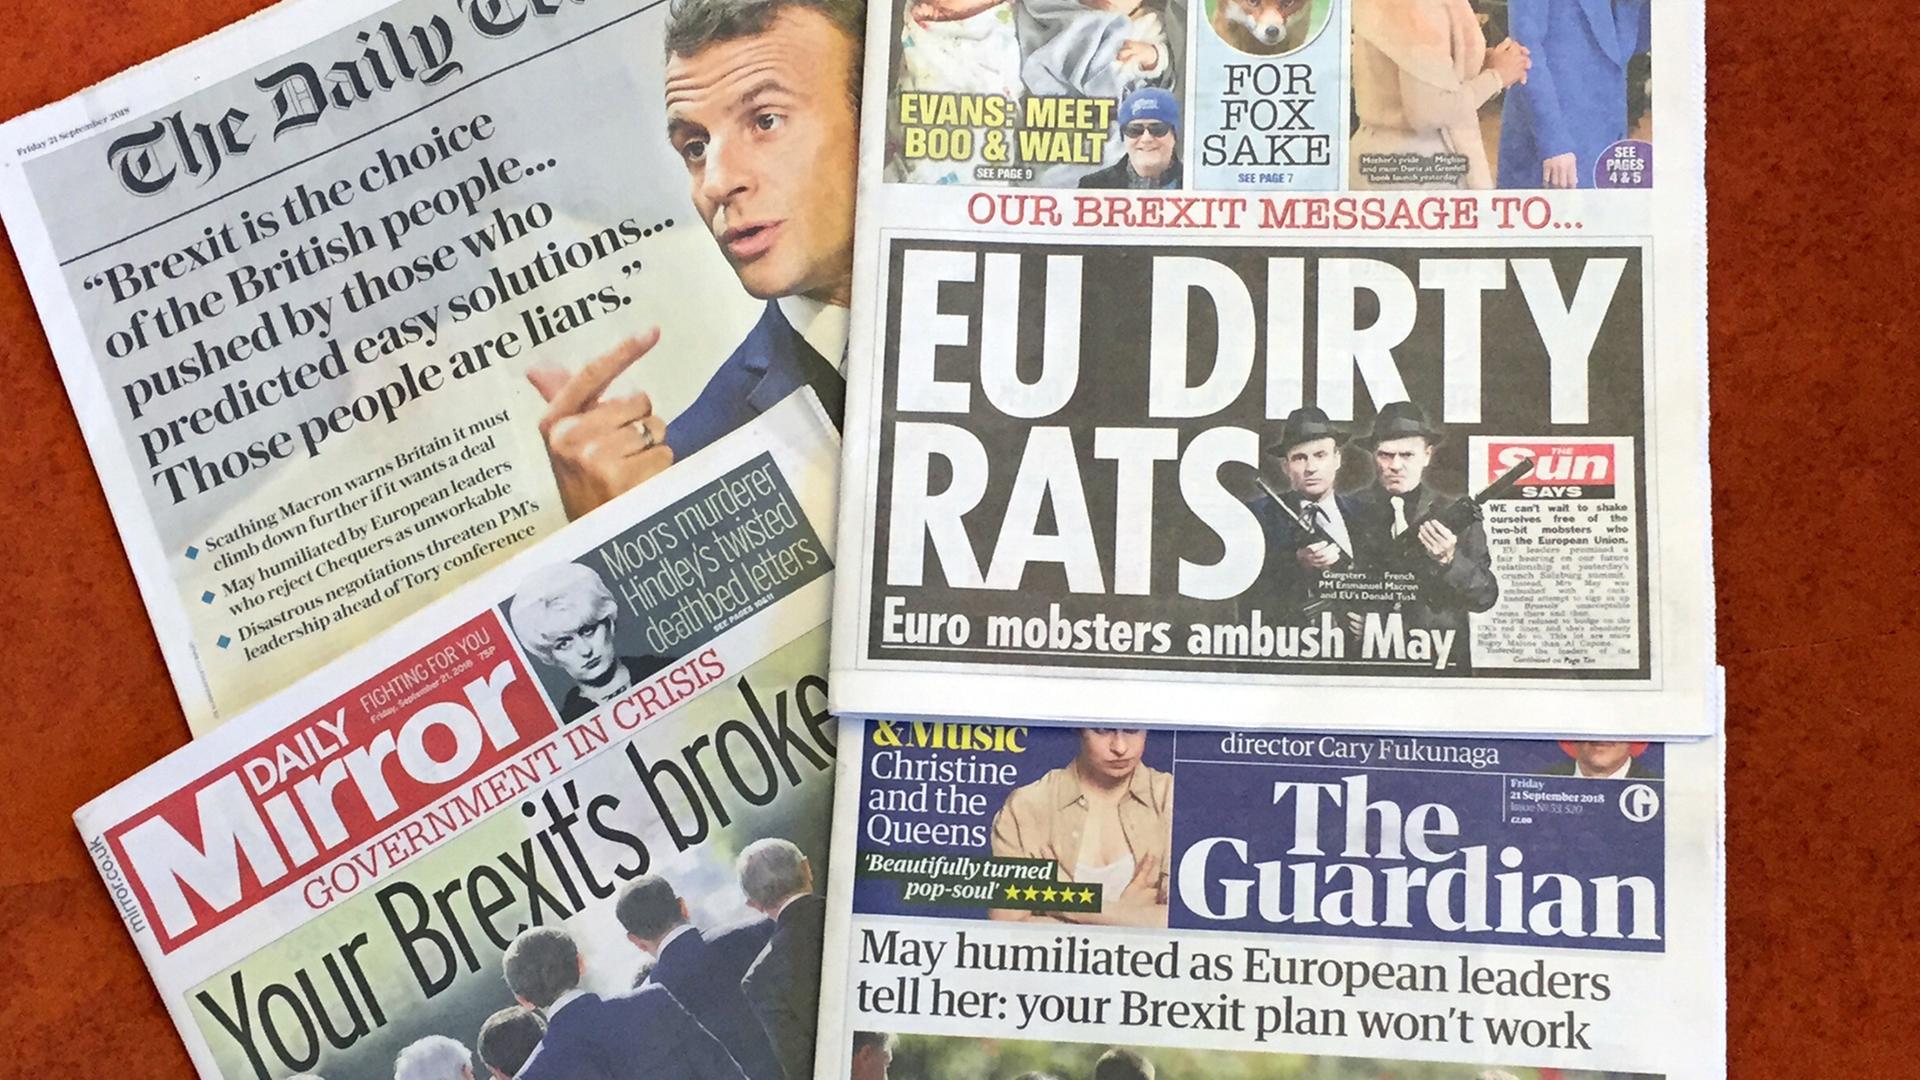 21.09.2018, Großbritannien, London: Britische Zeitungen vom 21.09.2018 liegen auf einem Tisch. (zu dpa "Britische Zeitung zu Macron und Tusk: «Europäische dreckige Ratten»" am 21.09.2018)